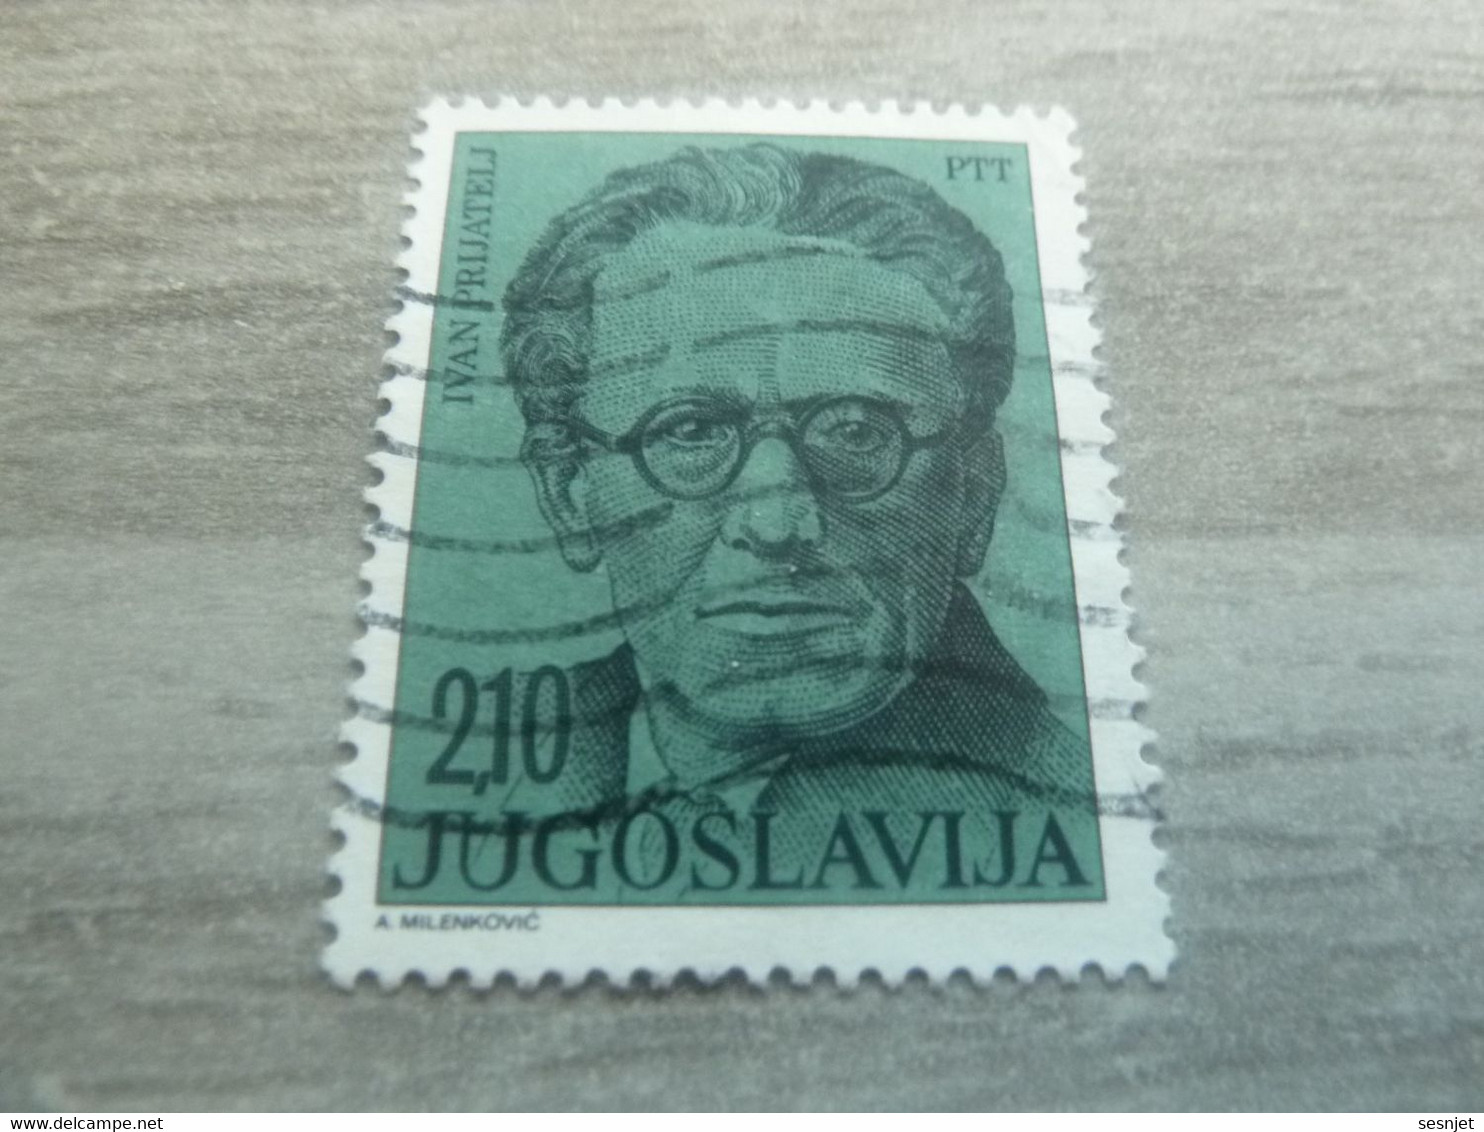 Ptt - Jugoslavija - Ivan Prijatelj - Val 2.10 - Bleu-vert - Oblitéré - - Gebraucht